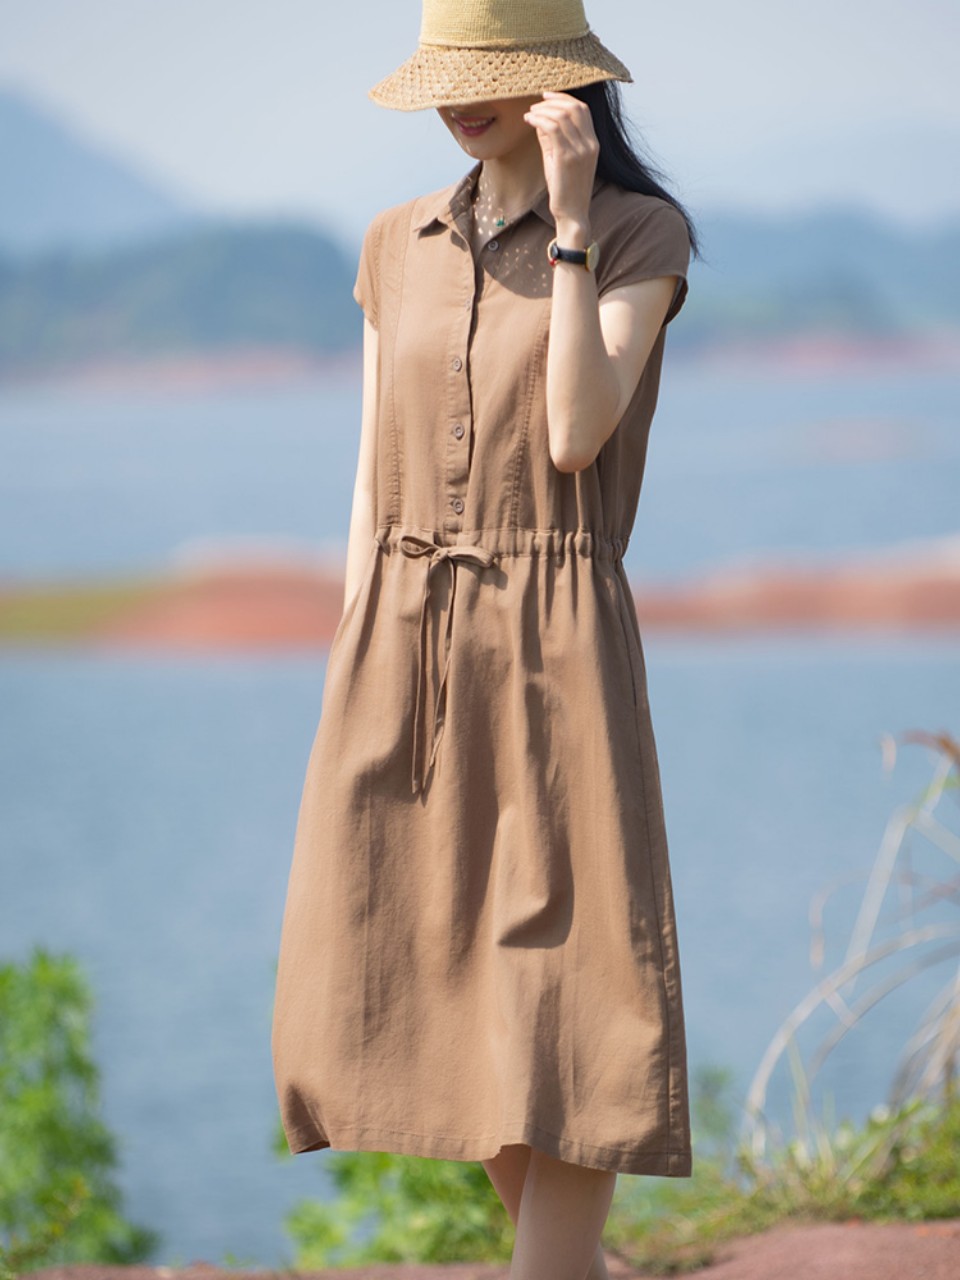 Đầm Suông Linen Cổ Đức,Váy Sơ mi Công Sở, Dạo Phố Đũi Việt - Phong Cách Thời Trang Hàn Quốc